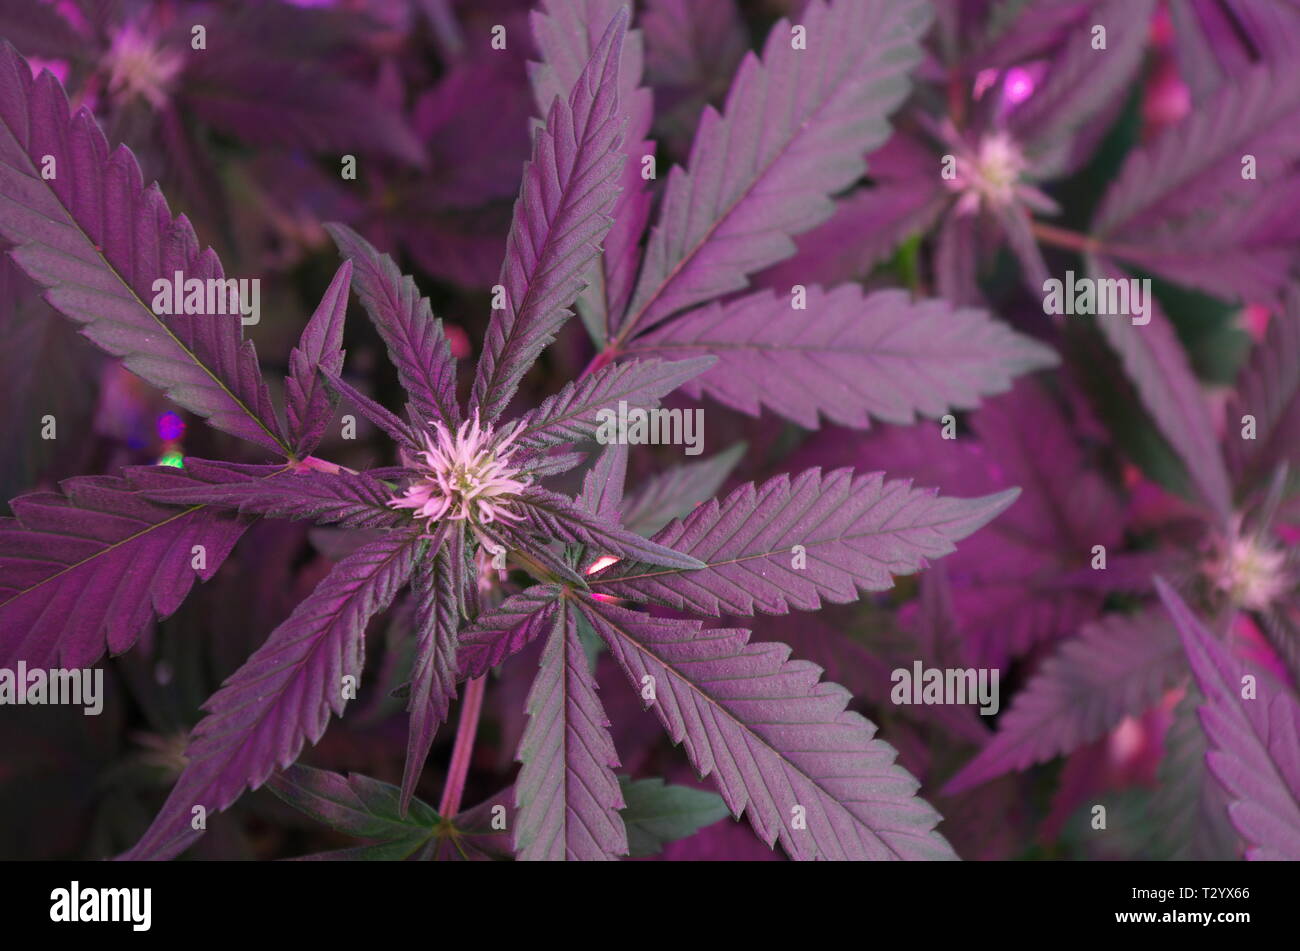 Les plants de marijuana (cannabis sativa indica hybrids) afficher les pistils au centre des feuilles de ventilateur. Ces 'poils' se développera en mauvaises herbes que les bourgeons se développent. Banque D'Images